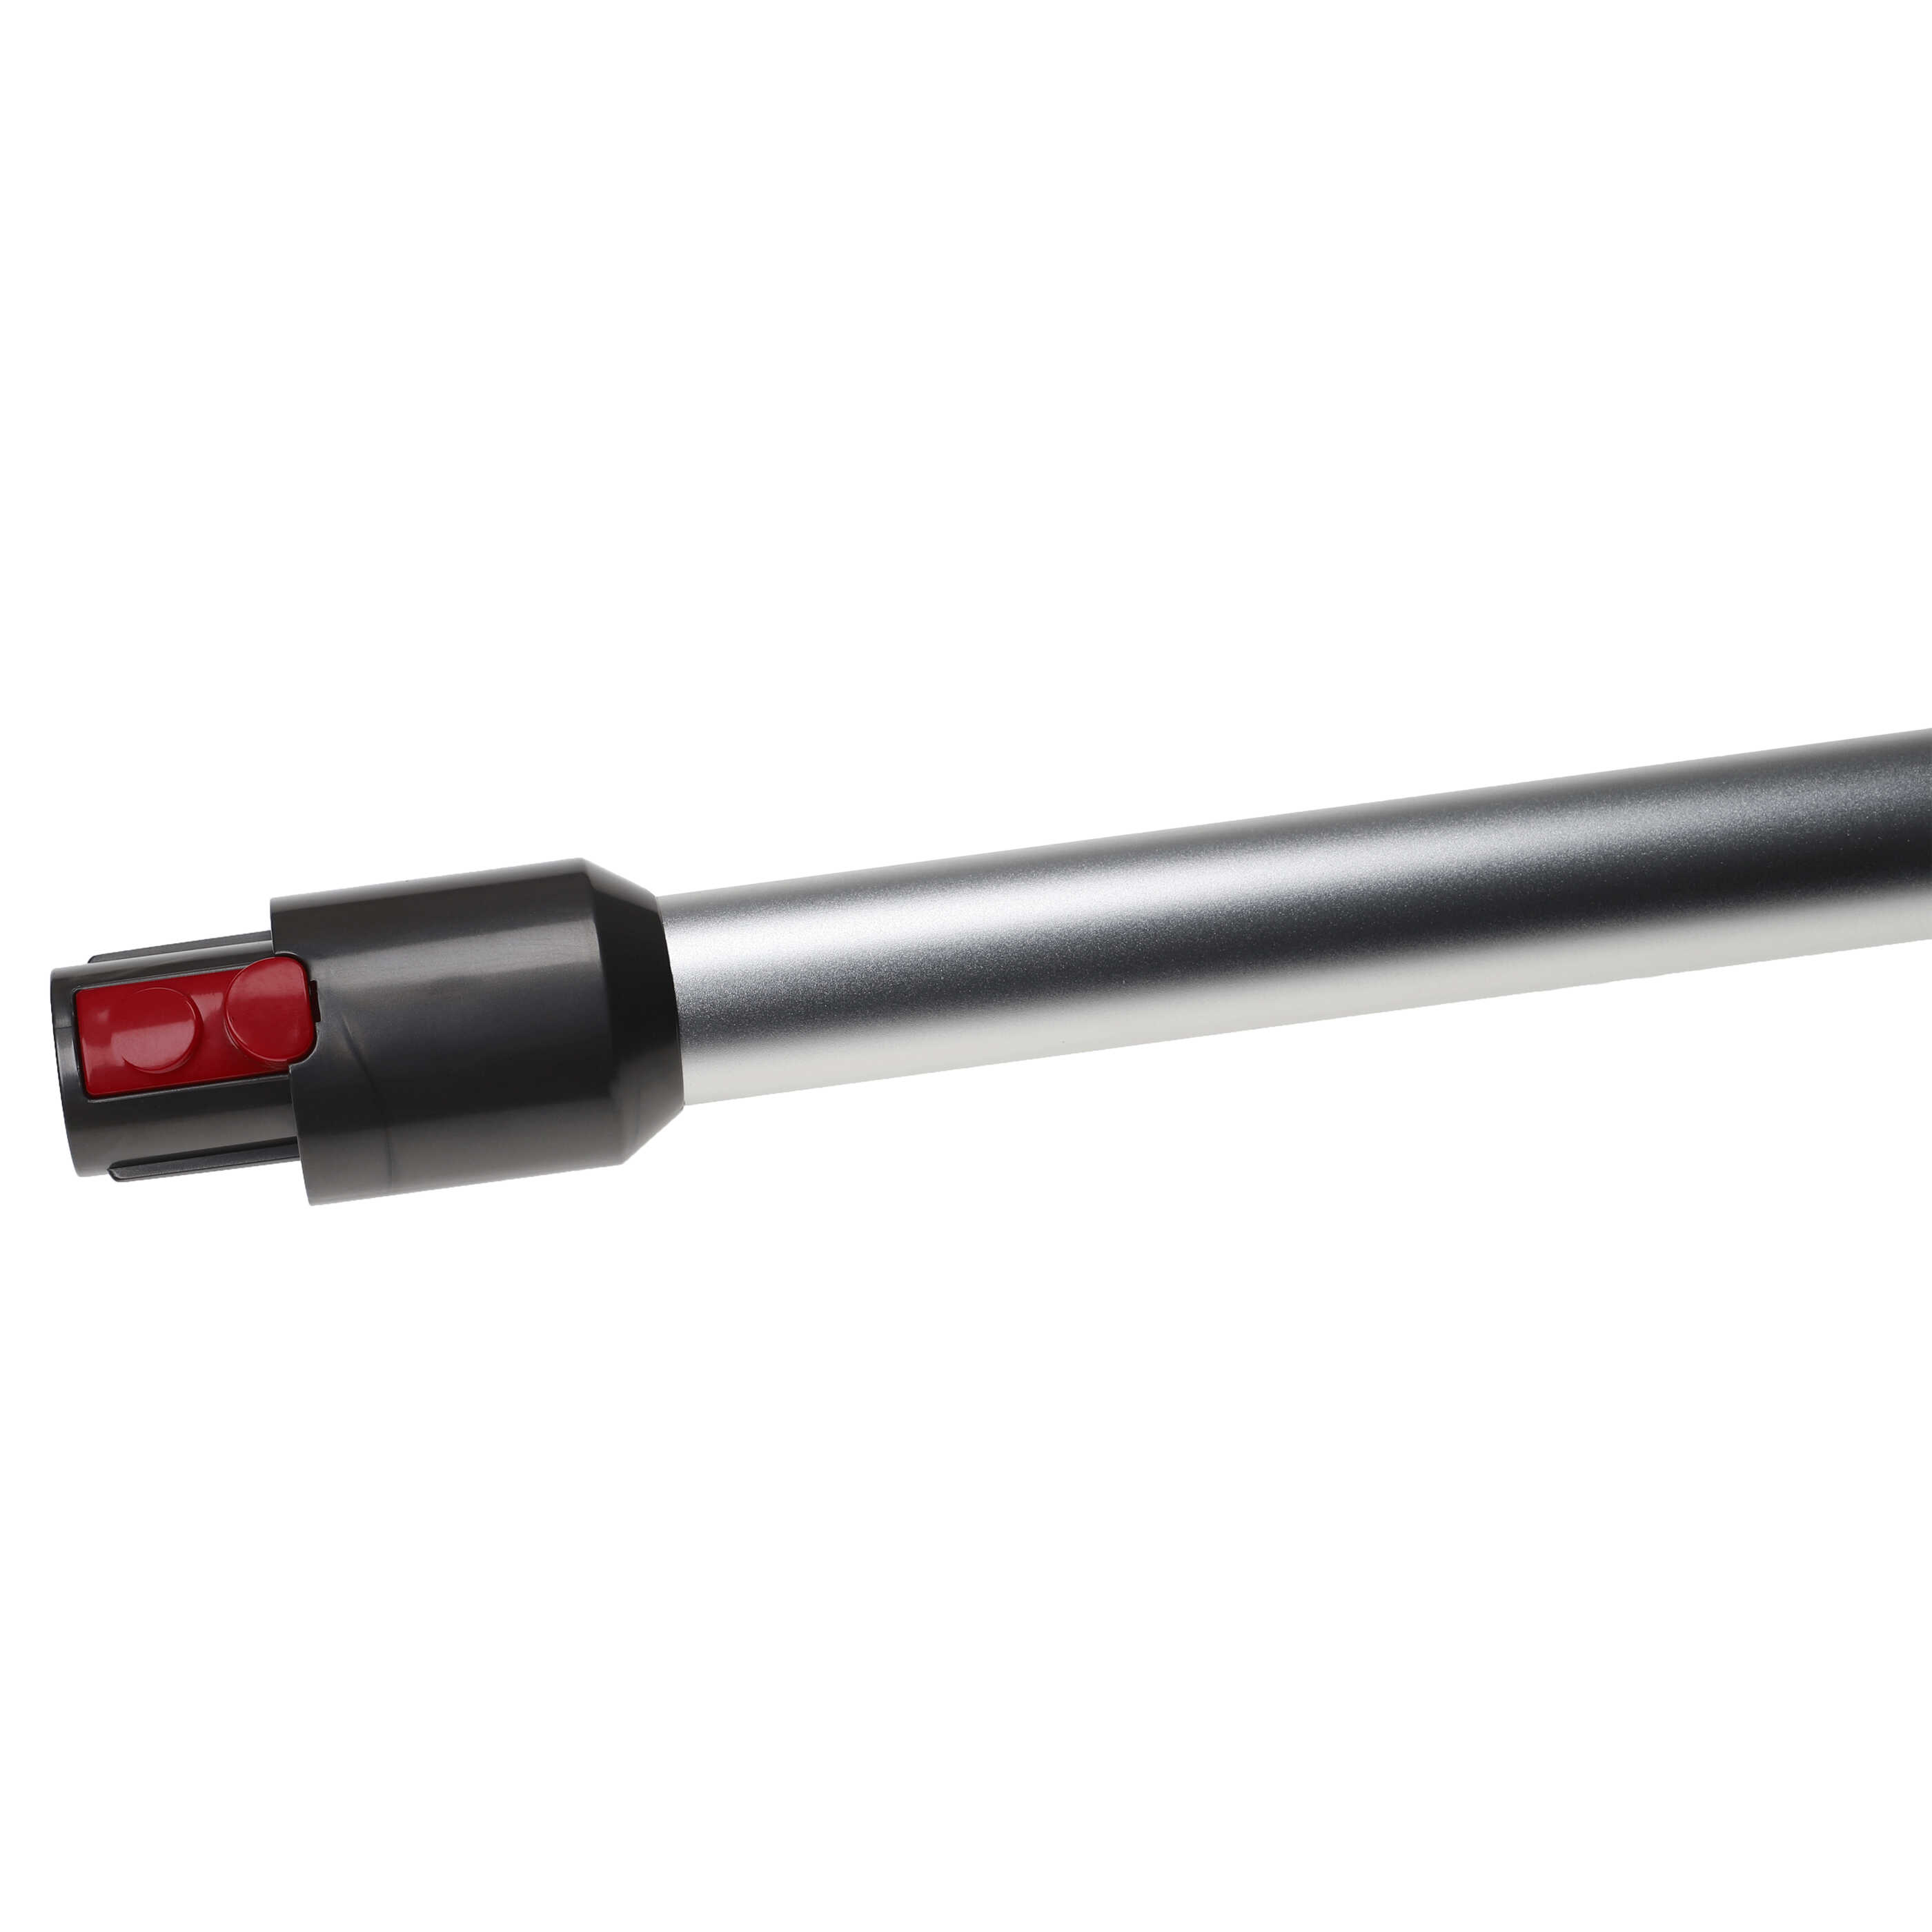 Tube for Dyson V10, V11, V15, V7, V8 vacuum cleaner - Length: 72.5, silver